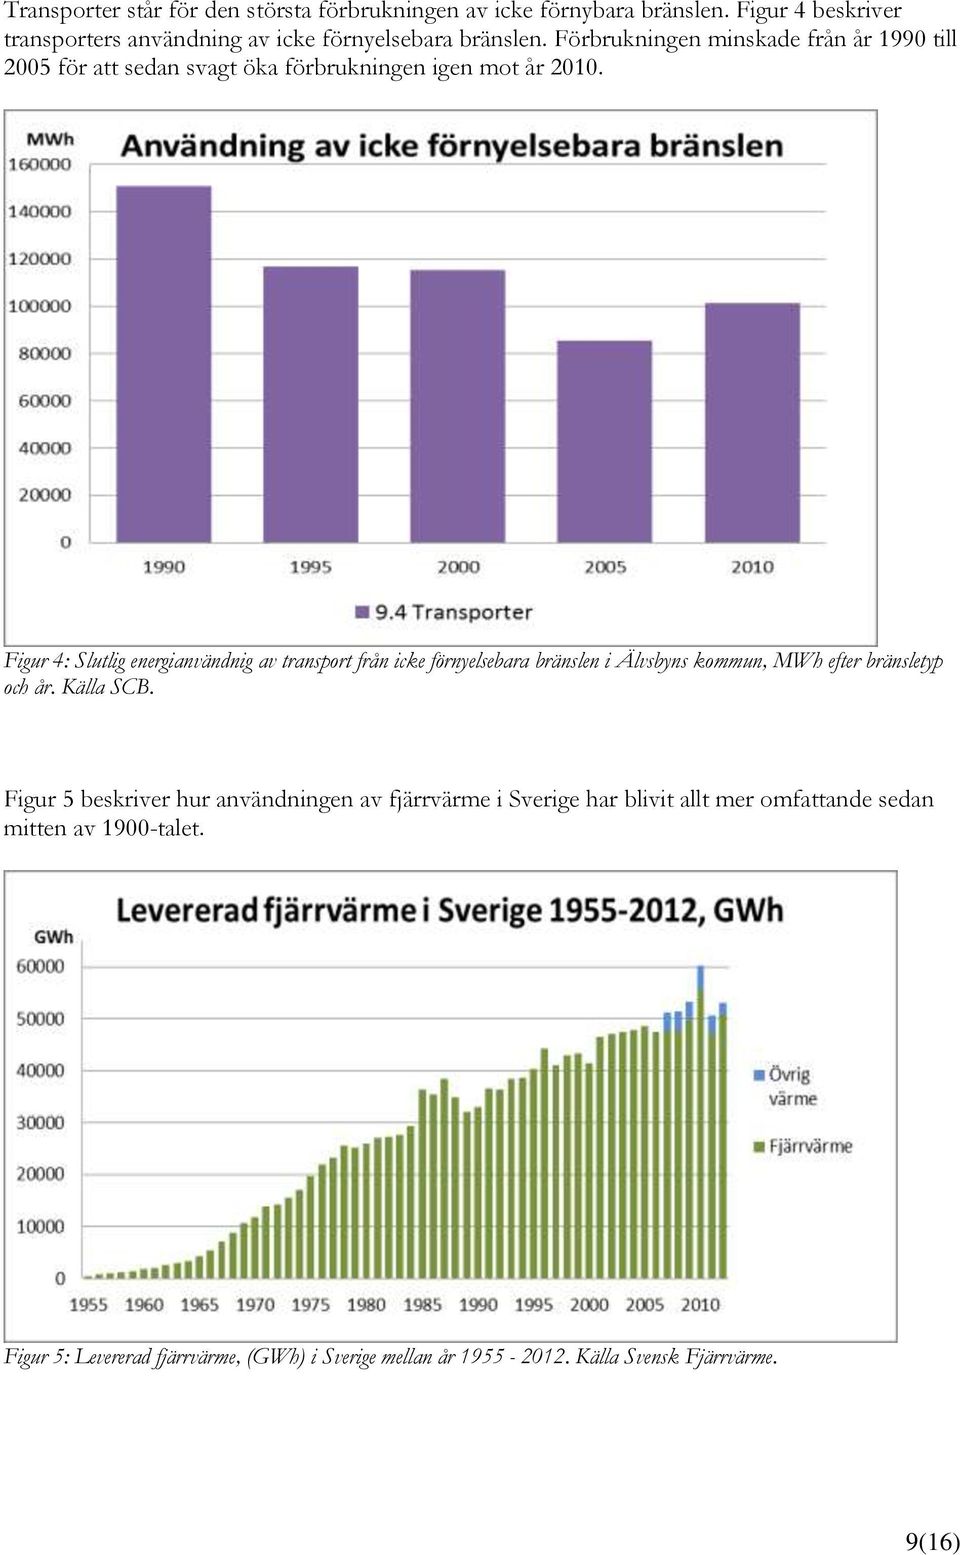 Figur 4: Slutlig energianvändnig av transport från icke förnyelsebara bränslen i Älvsbyns kommun, MWh efter bränsletyp och år. Källa SCB.